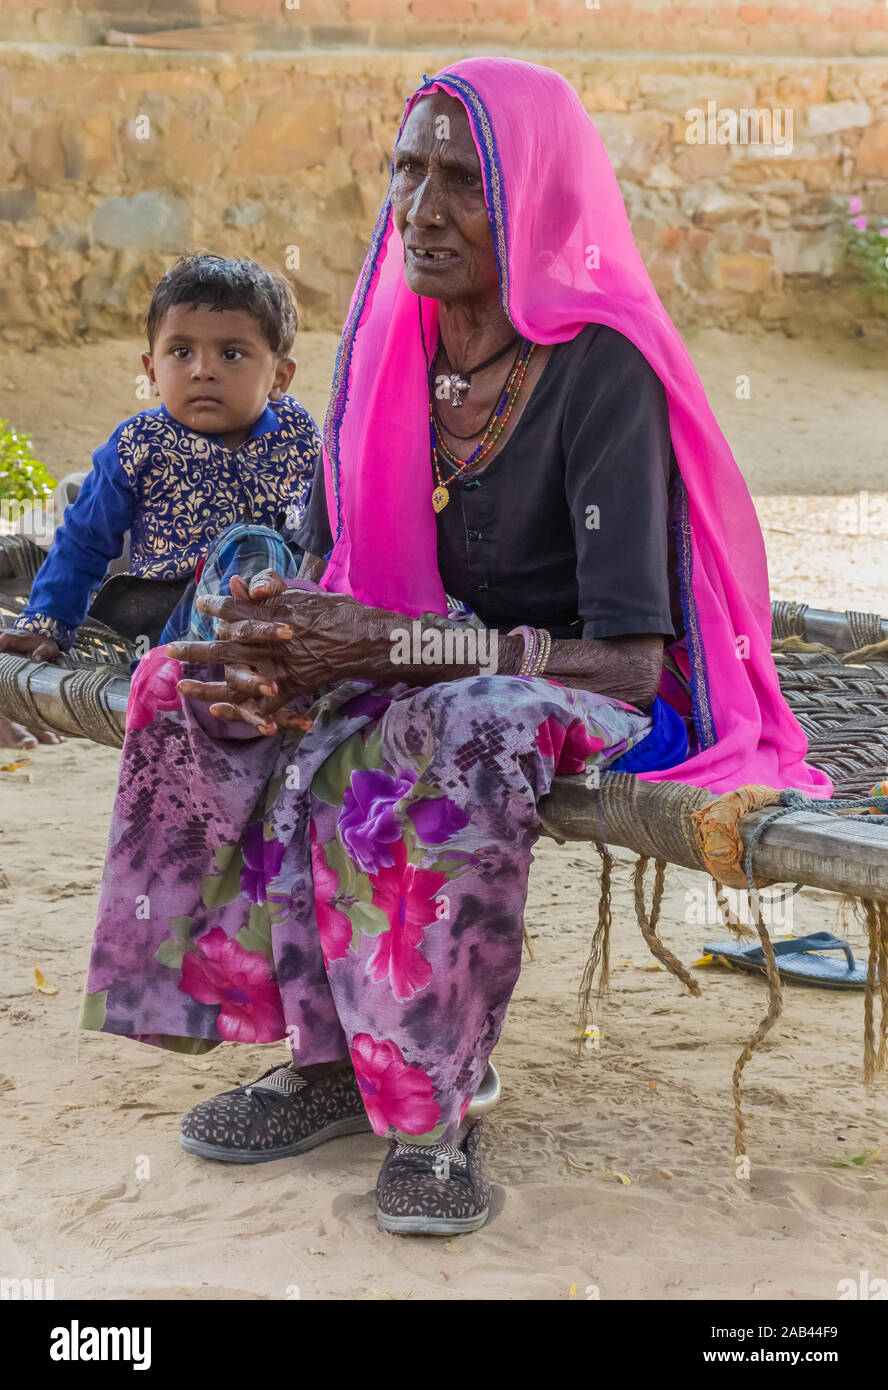 Vieille Femme et enfant assis sur un banc dans les zones rurales du Rajasthan, Inde Banque D'Images